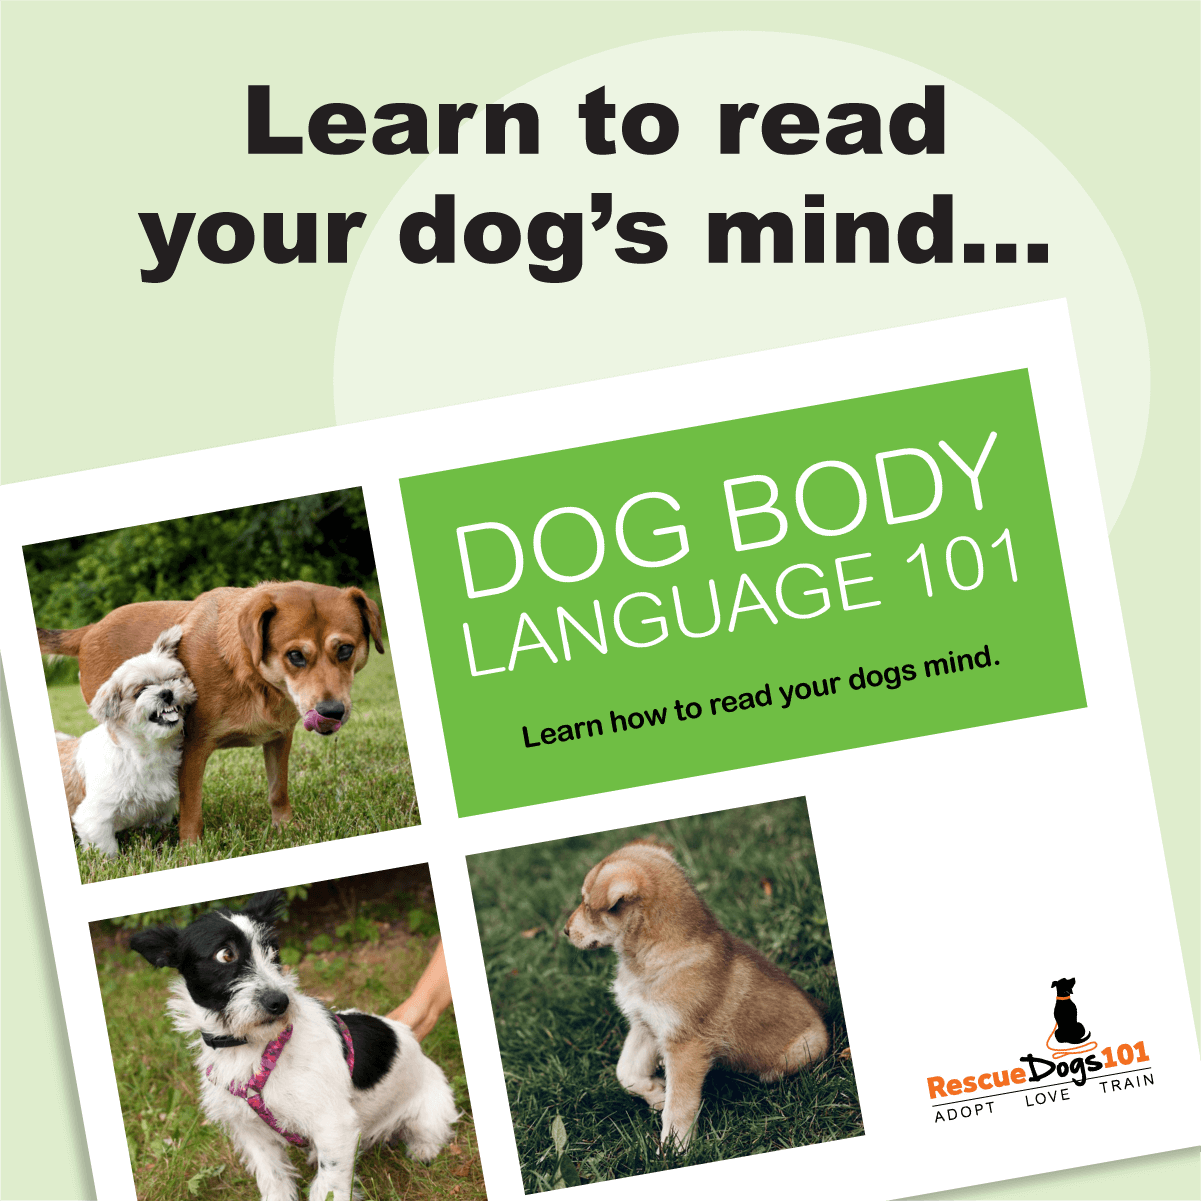 Dog Body Language 101 - The Daily Dog